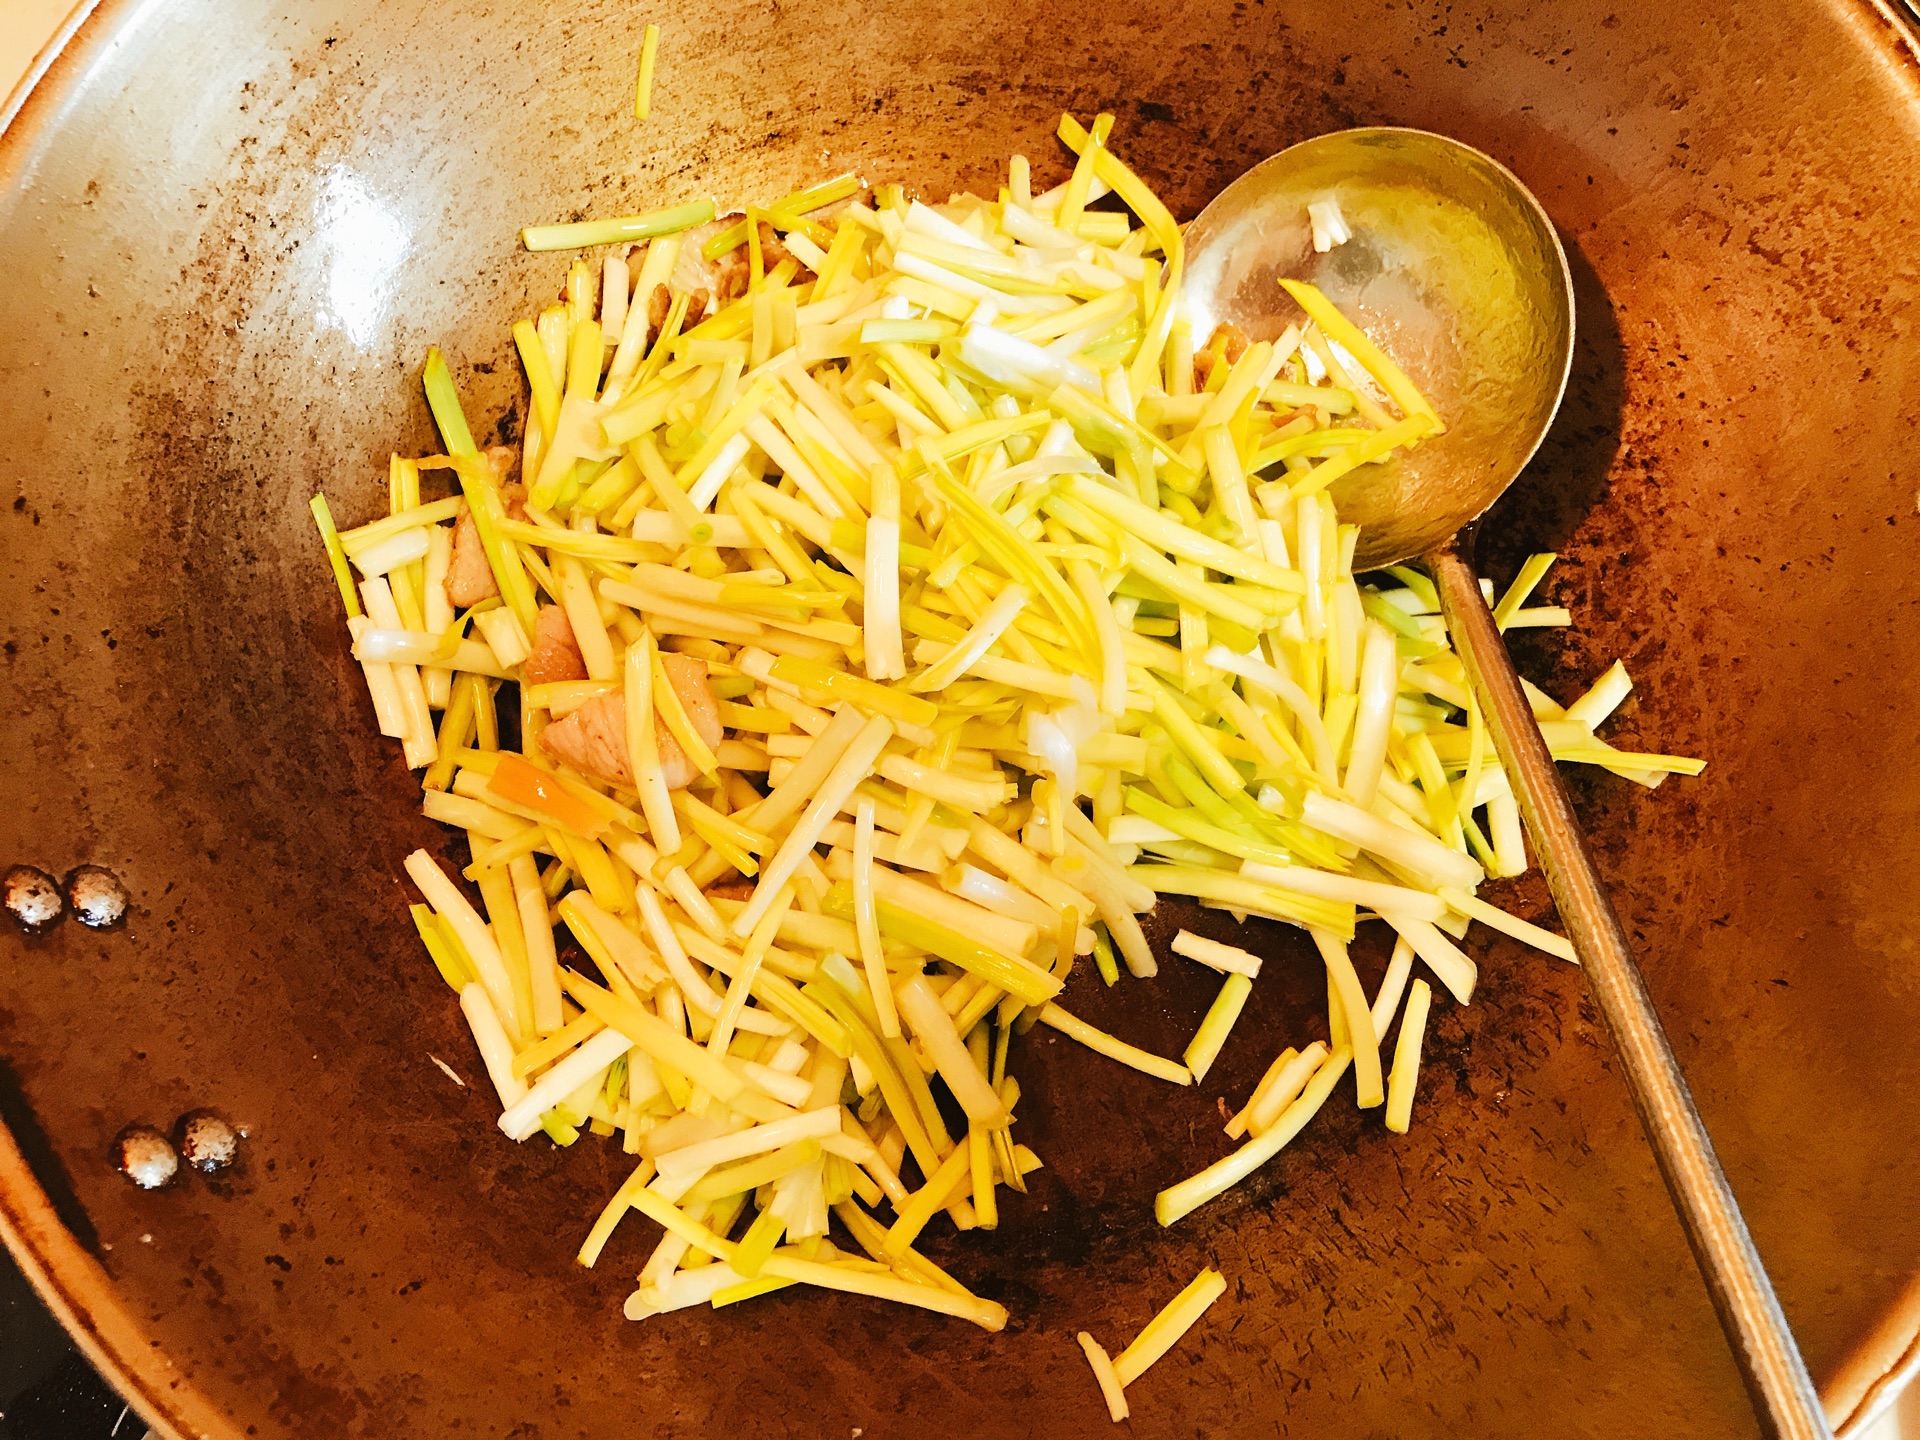 蒜黄炒肉丝-蒜黄炒肉丝的营养价值-蒜黄炒肉丝的制作技巧-孕妈之家